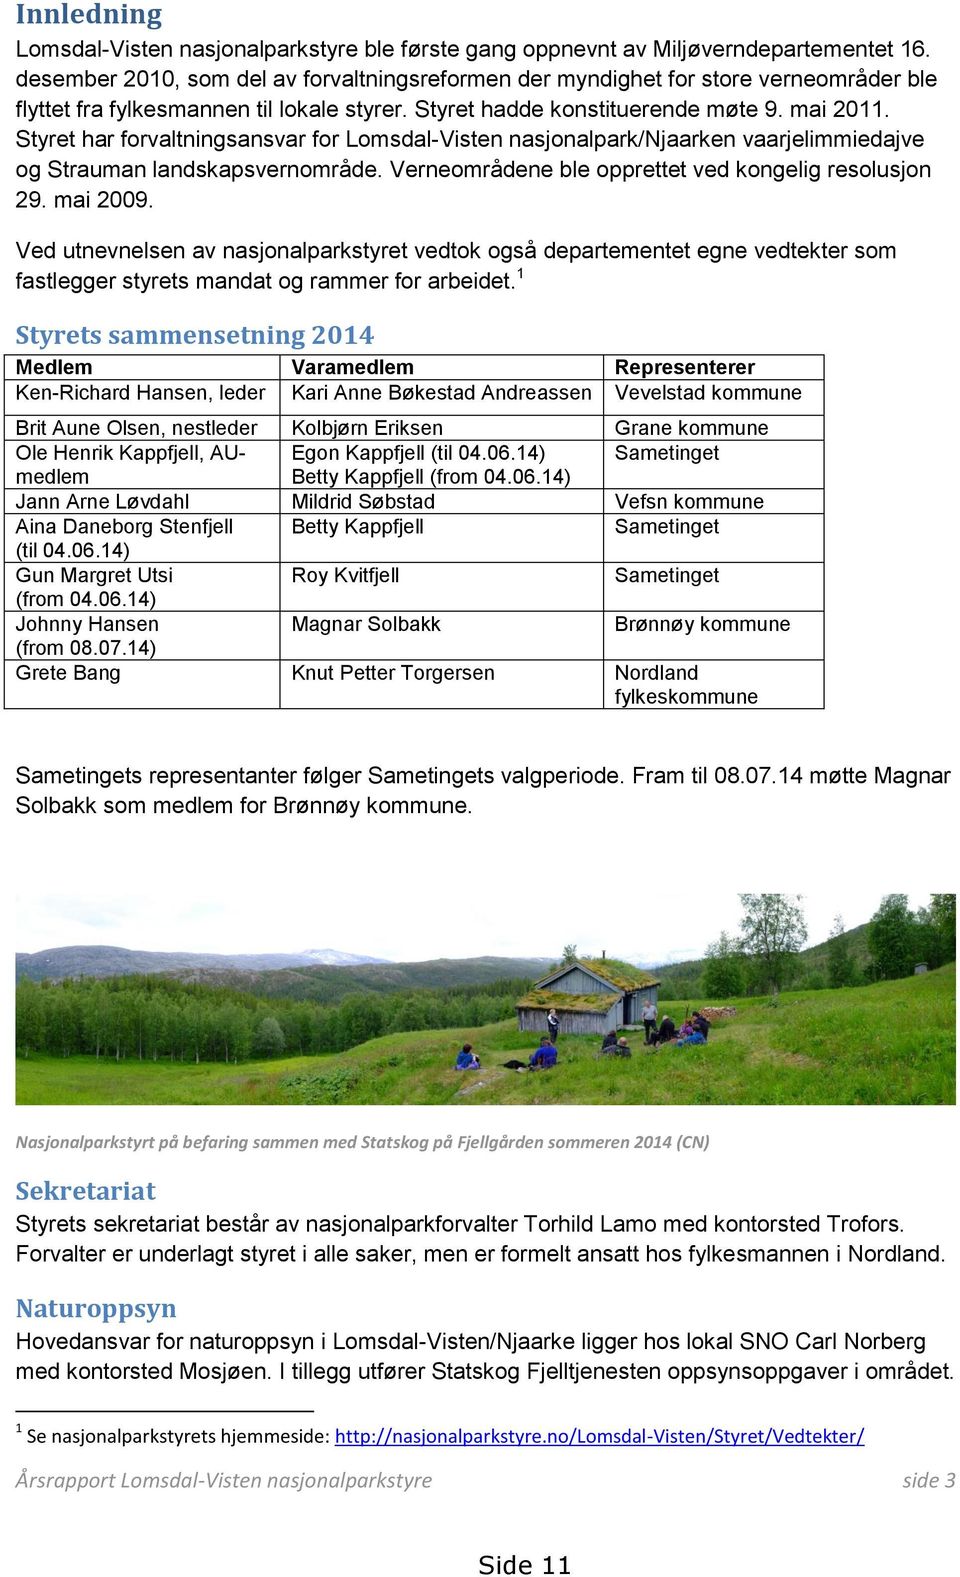 Styret har forvaltningsansvar for Lomsdal-Visten nasjonalpark/njaarken vaarjelimmiedajve og Strauman landskapsvernområde. Verneområdene ble opprettet ved kongelig resolusjon 29. mai 2009.